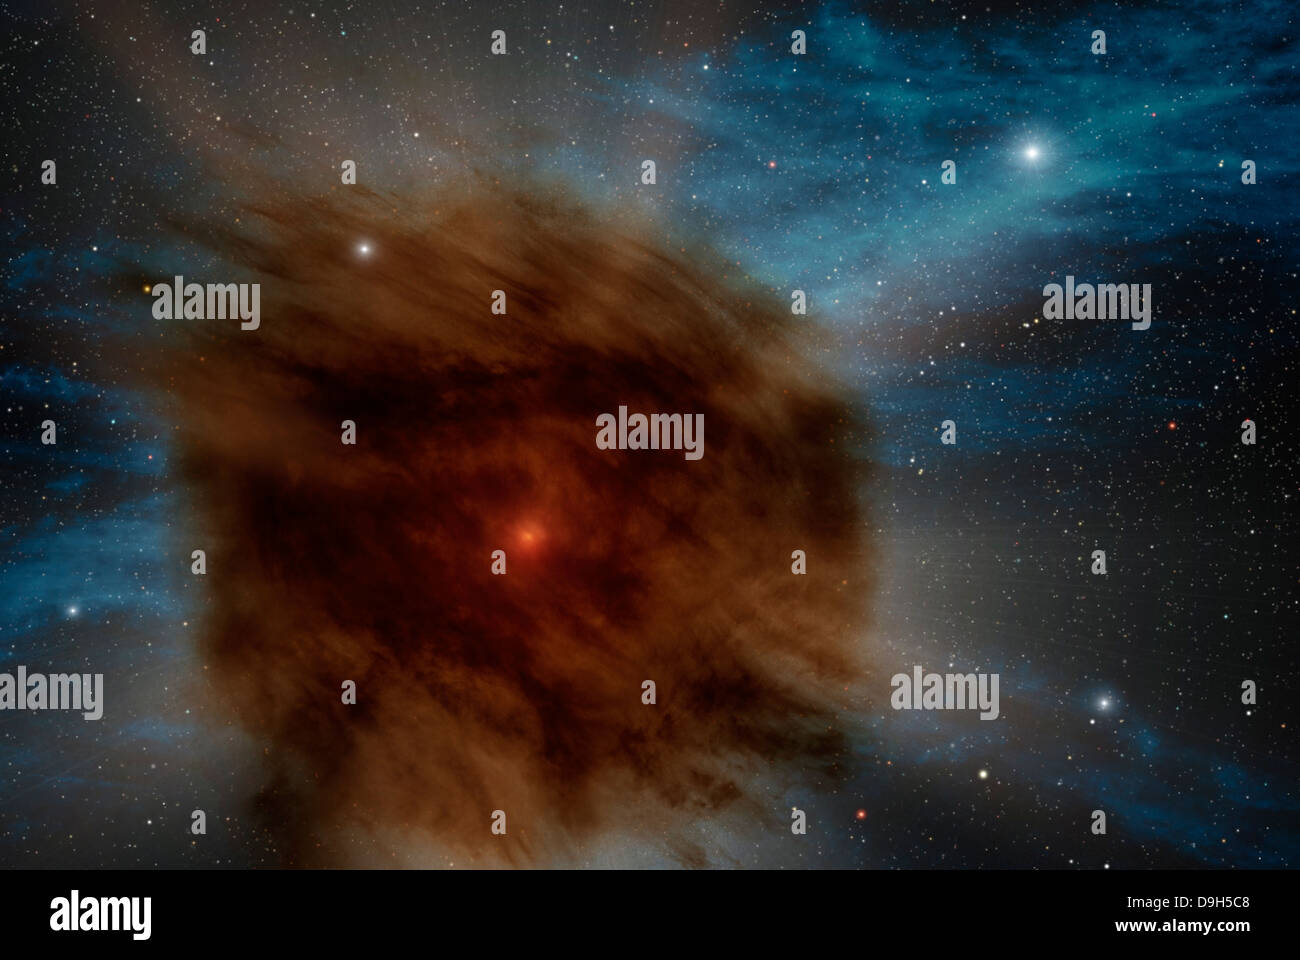 Eine äußere Hülle aus Gas und Staub aus einem durchgebrochenen Sterne verdeckt die Supernova innerhalb. Stockfoto